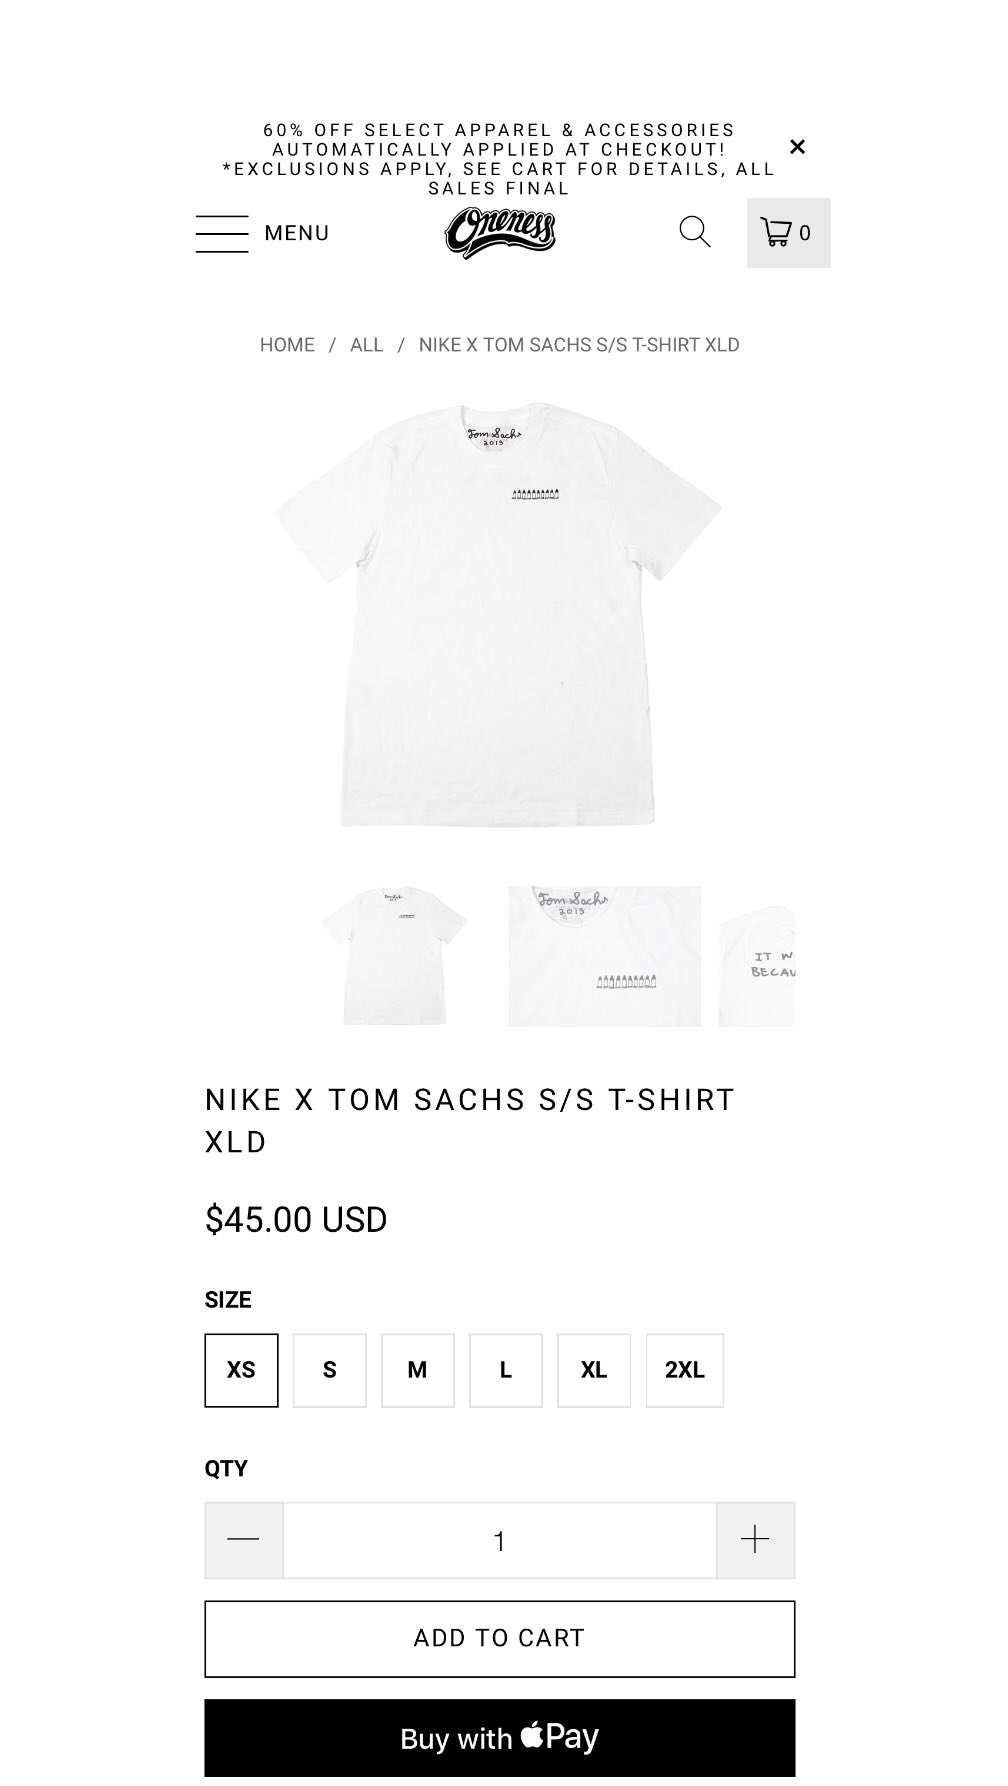 SNKR_TWITR on Twitter: "Tom Sachs x Nike tee #AD https://t.co/JbQ79PSez0" / Twitter